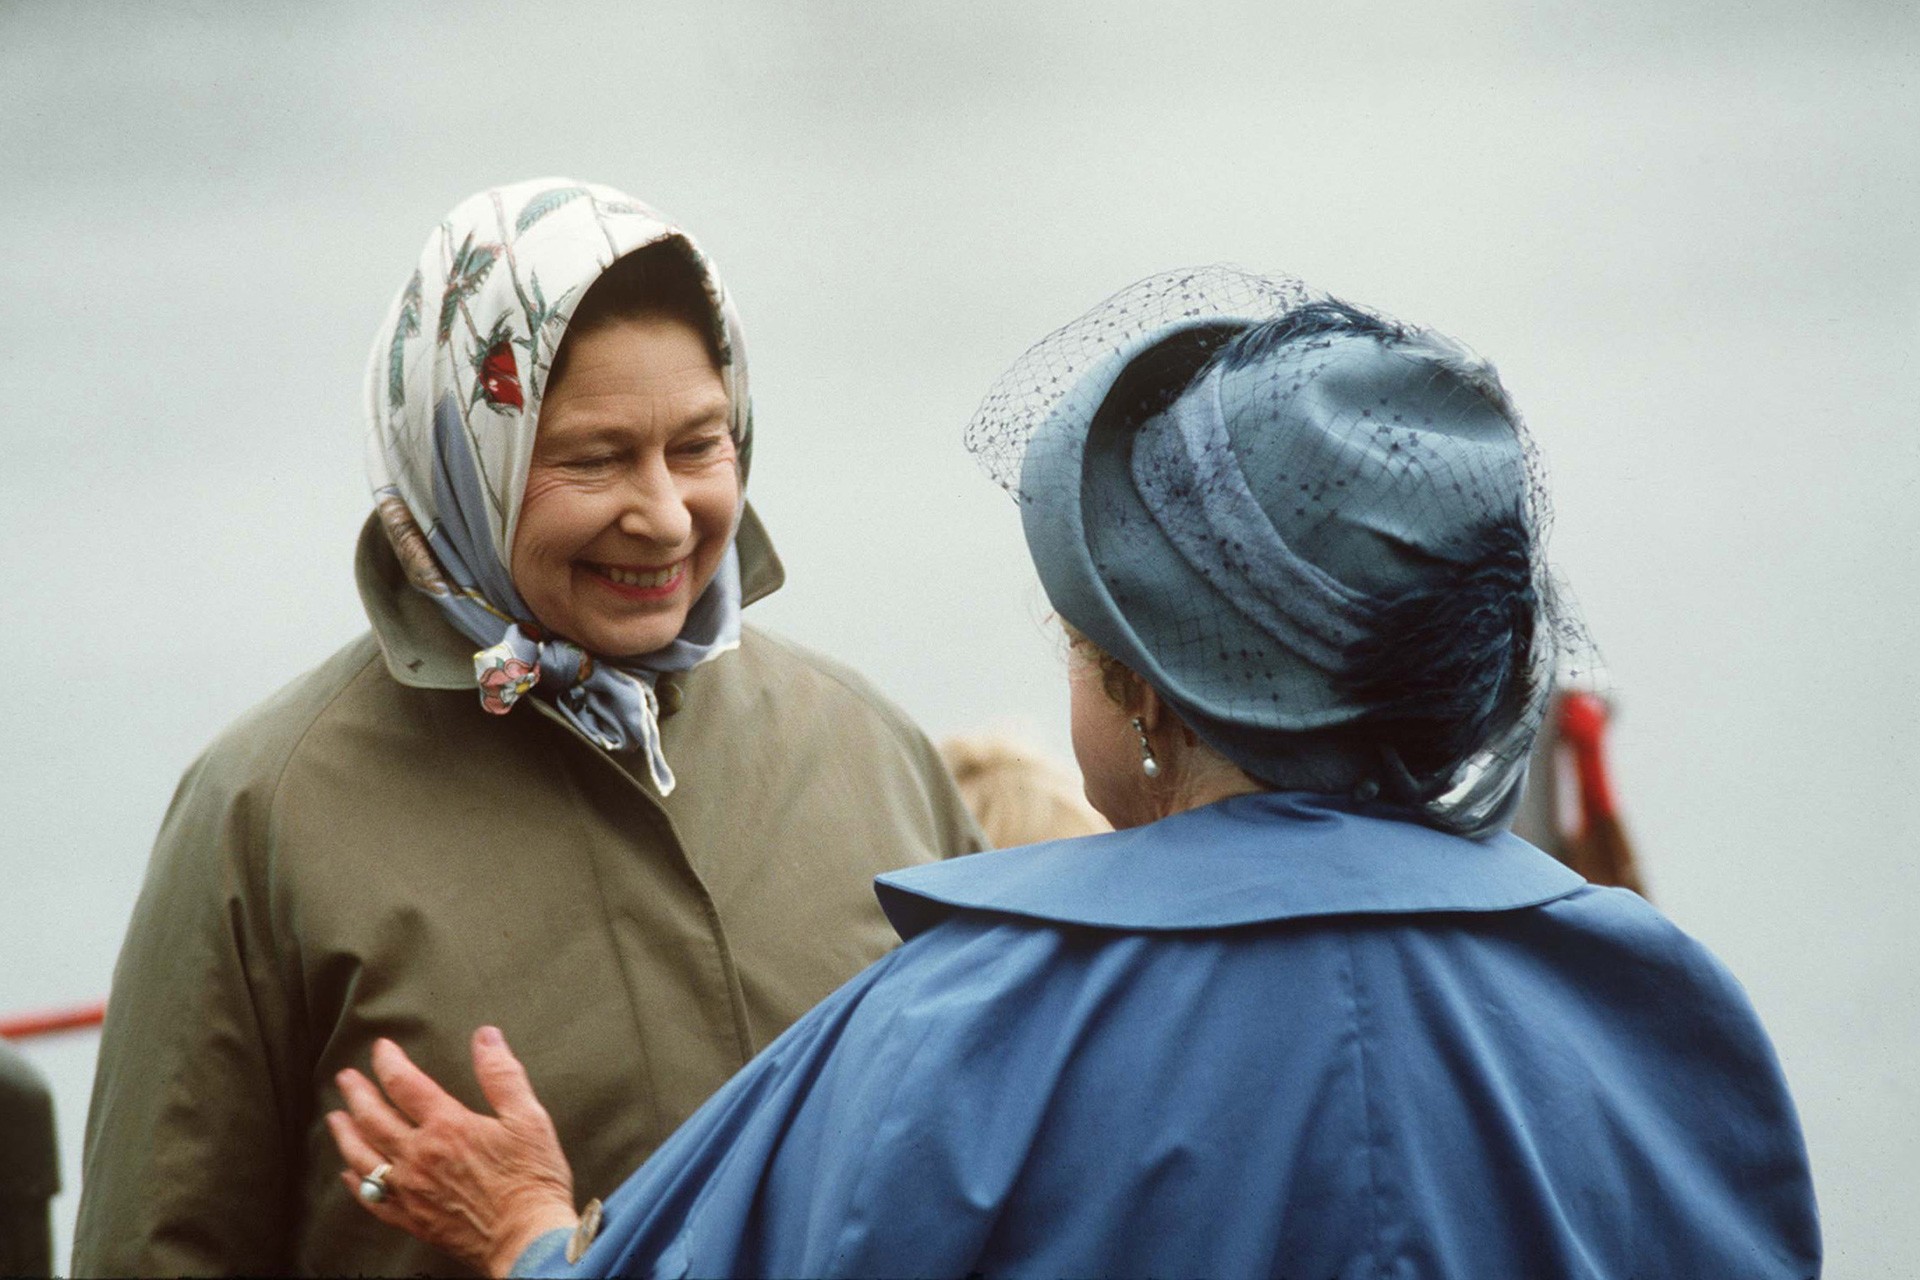 Os momentos mais fashion da rainha Elizabeth II (Foto: Getty Images)